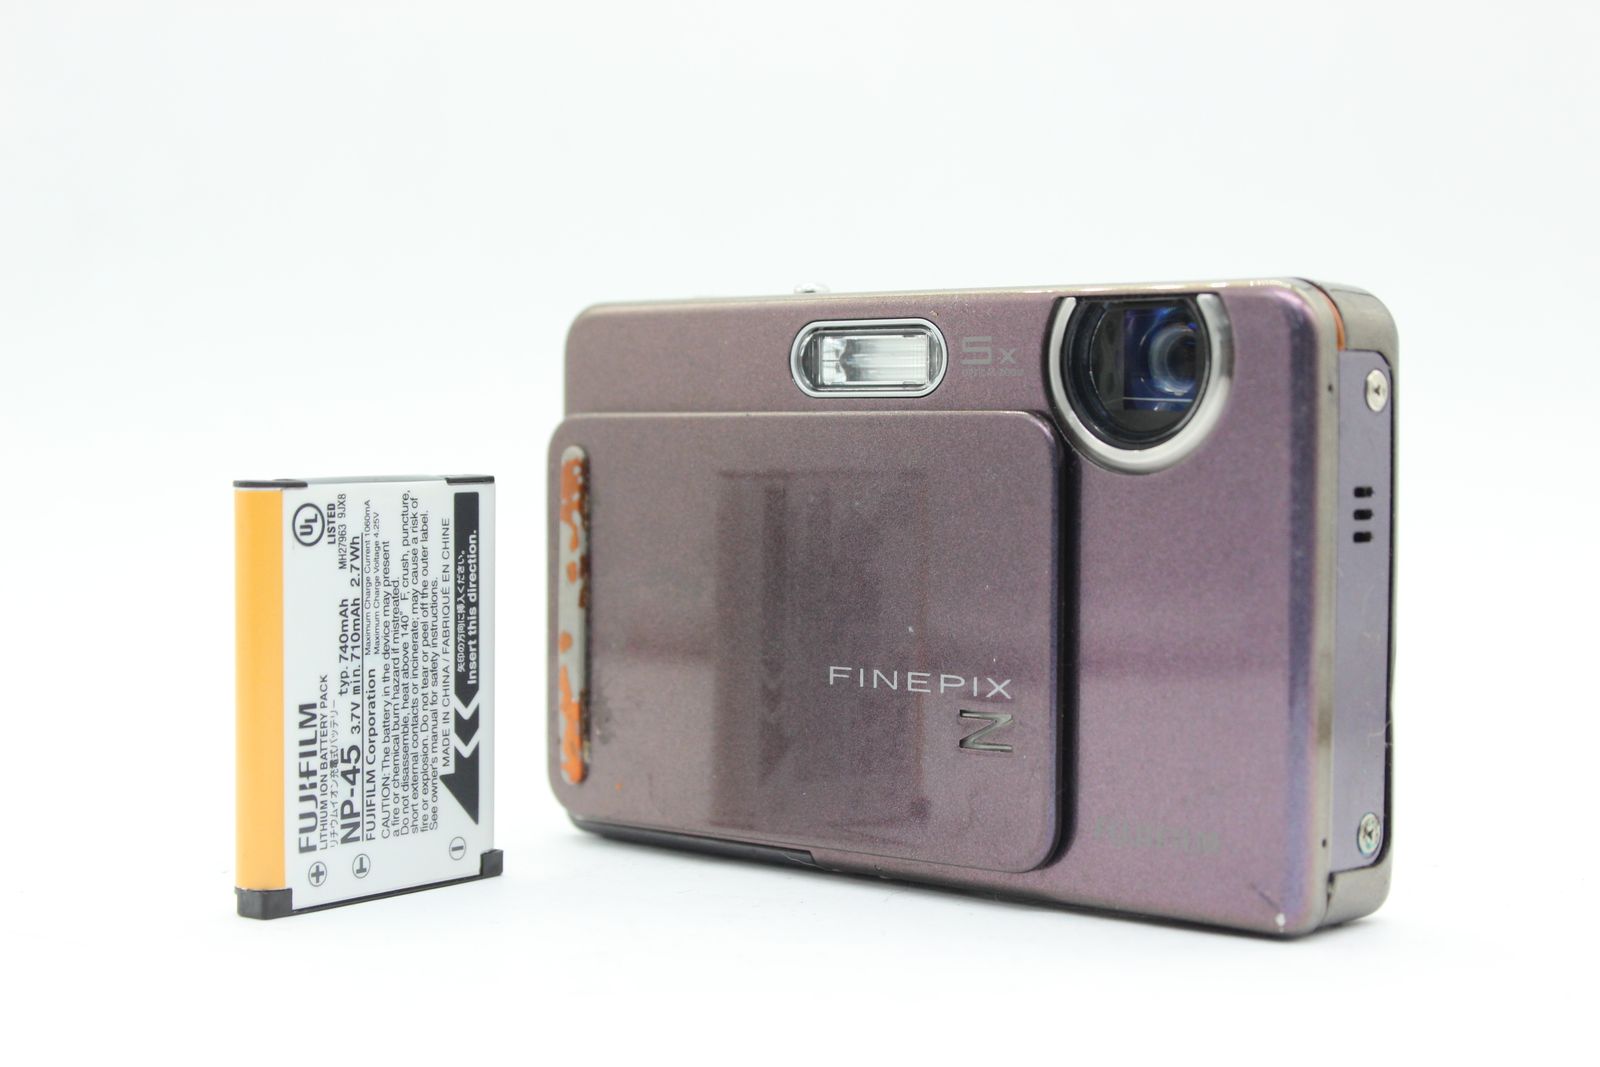 FinePix Z300 デジタルカメラ FUJIFILM富士フィルム - デジタルカメラ